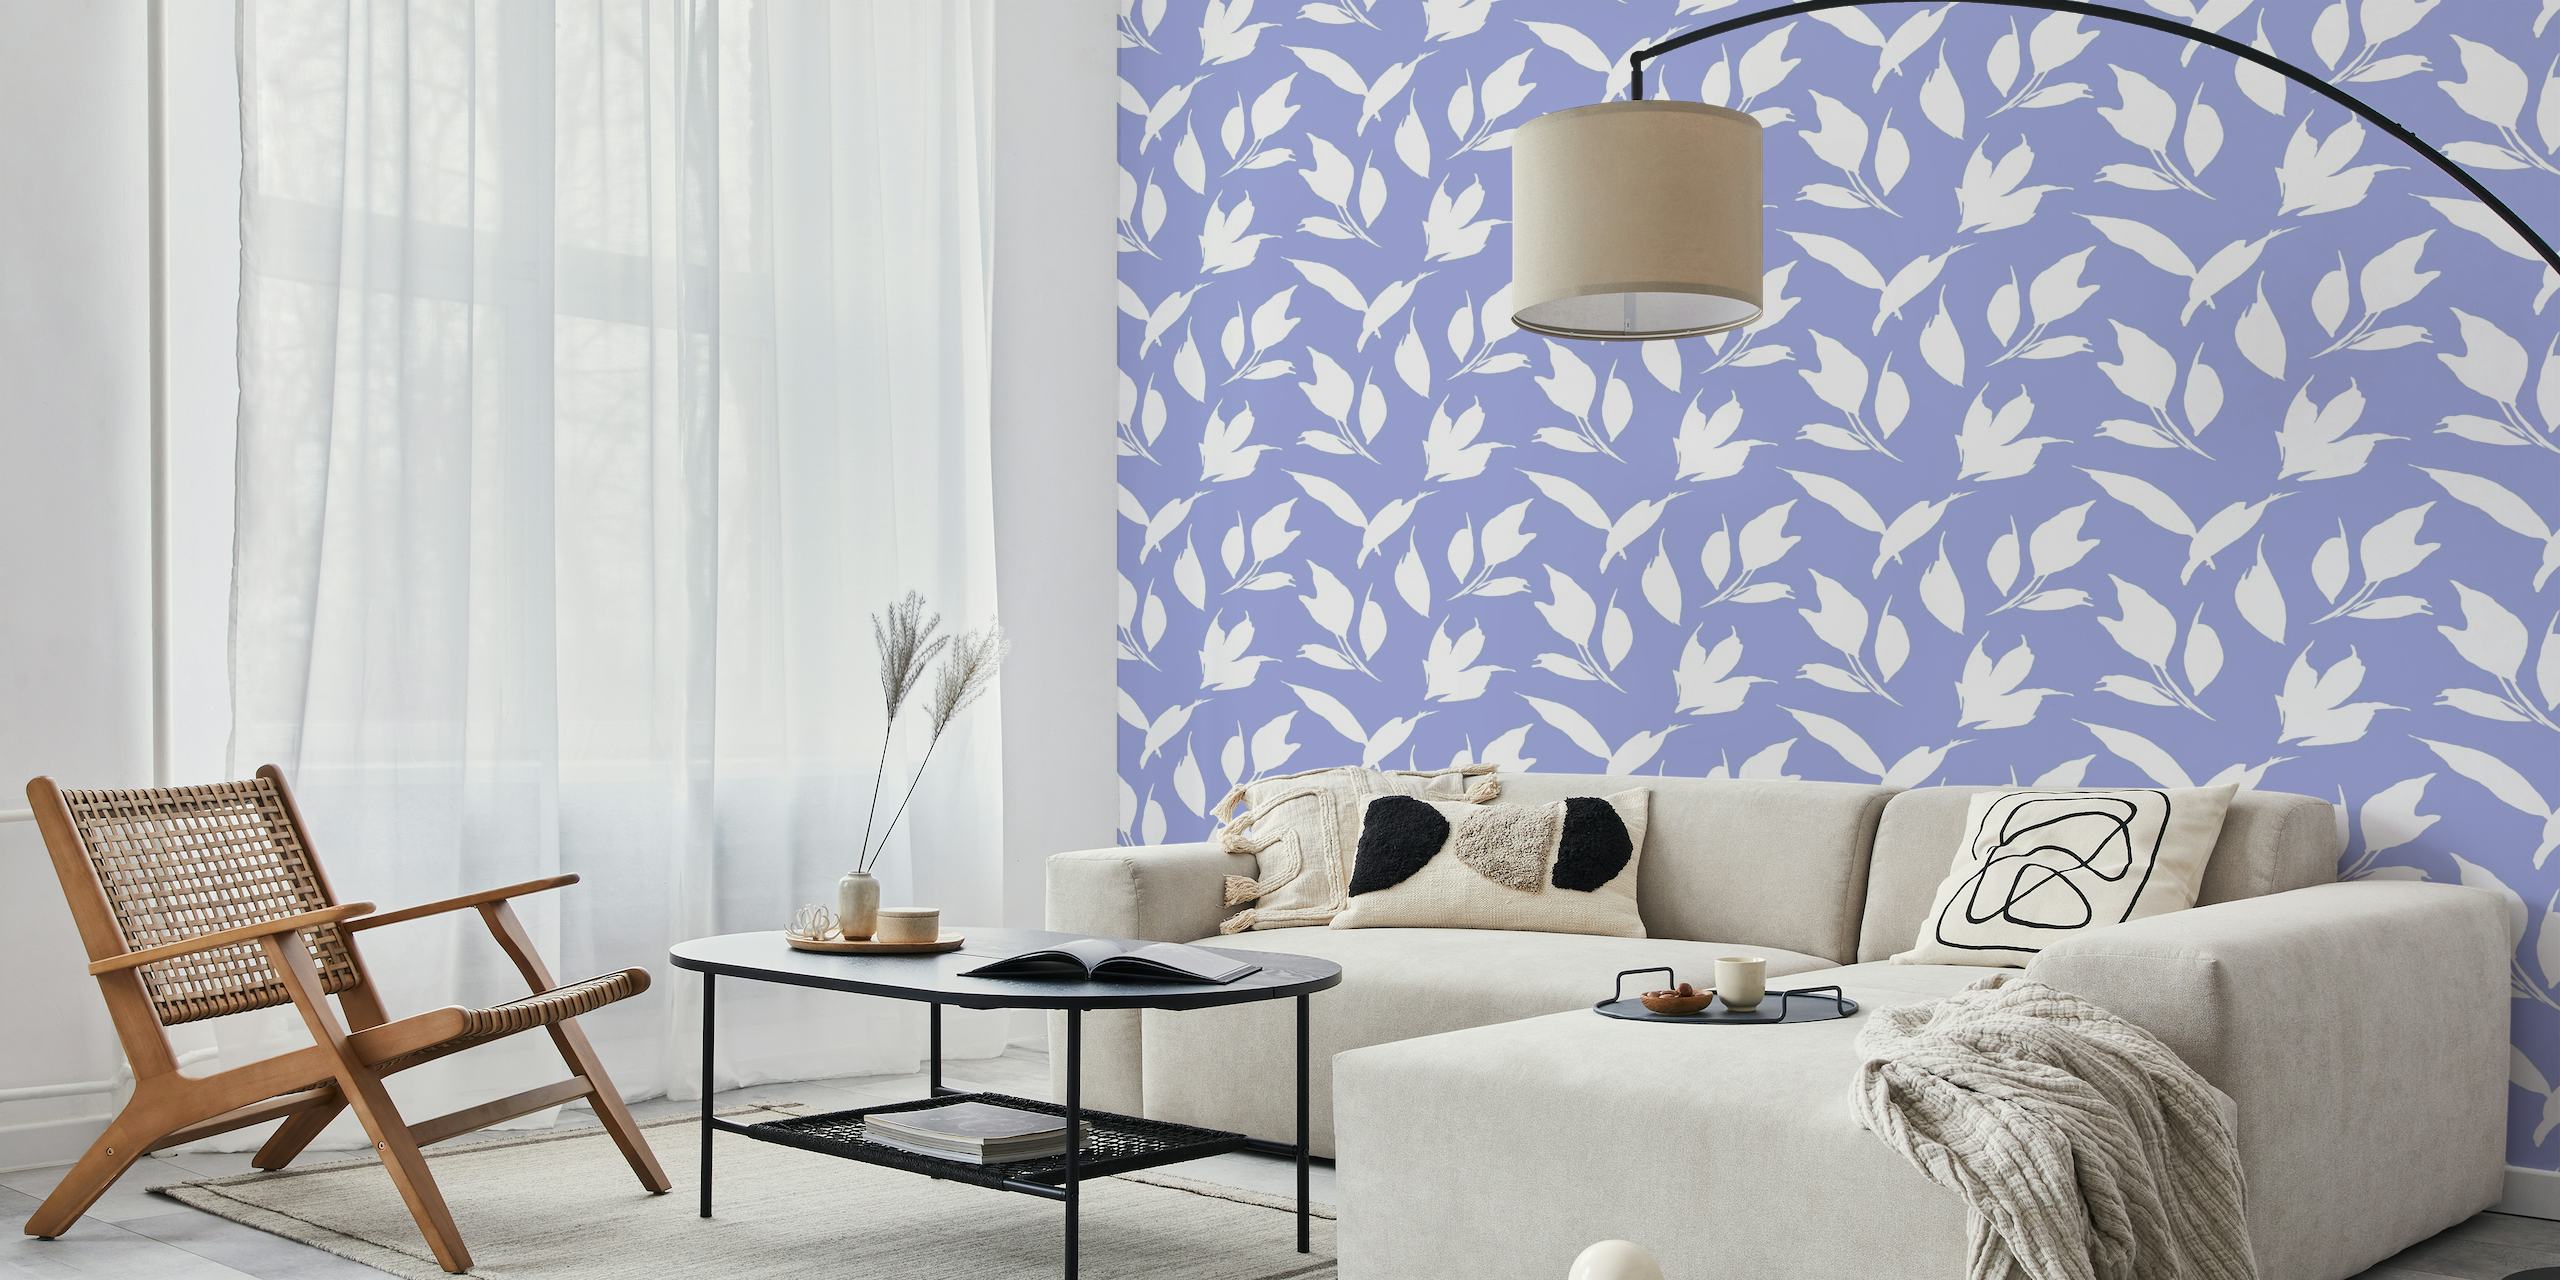 Semplice motivo a foglie botaniche in bianco su sfondo viola per decorazione murale